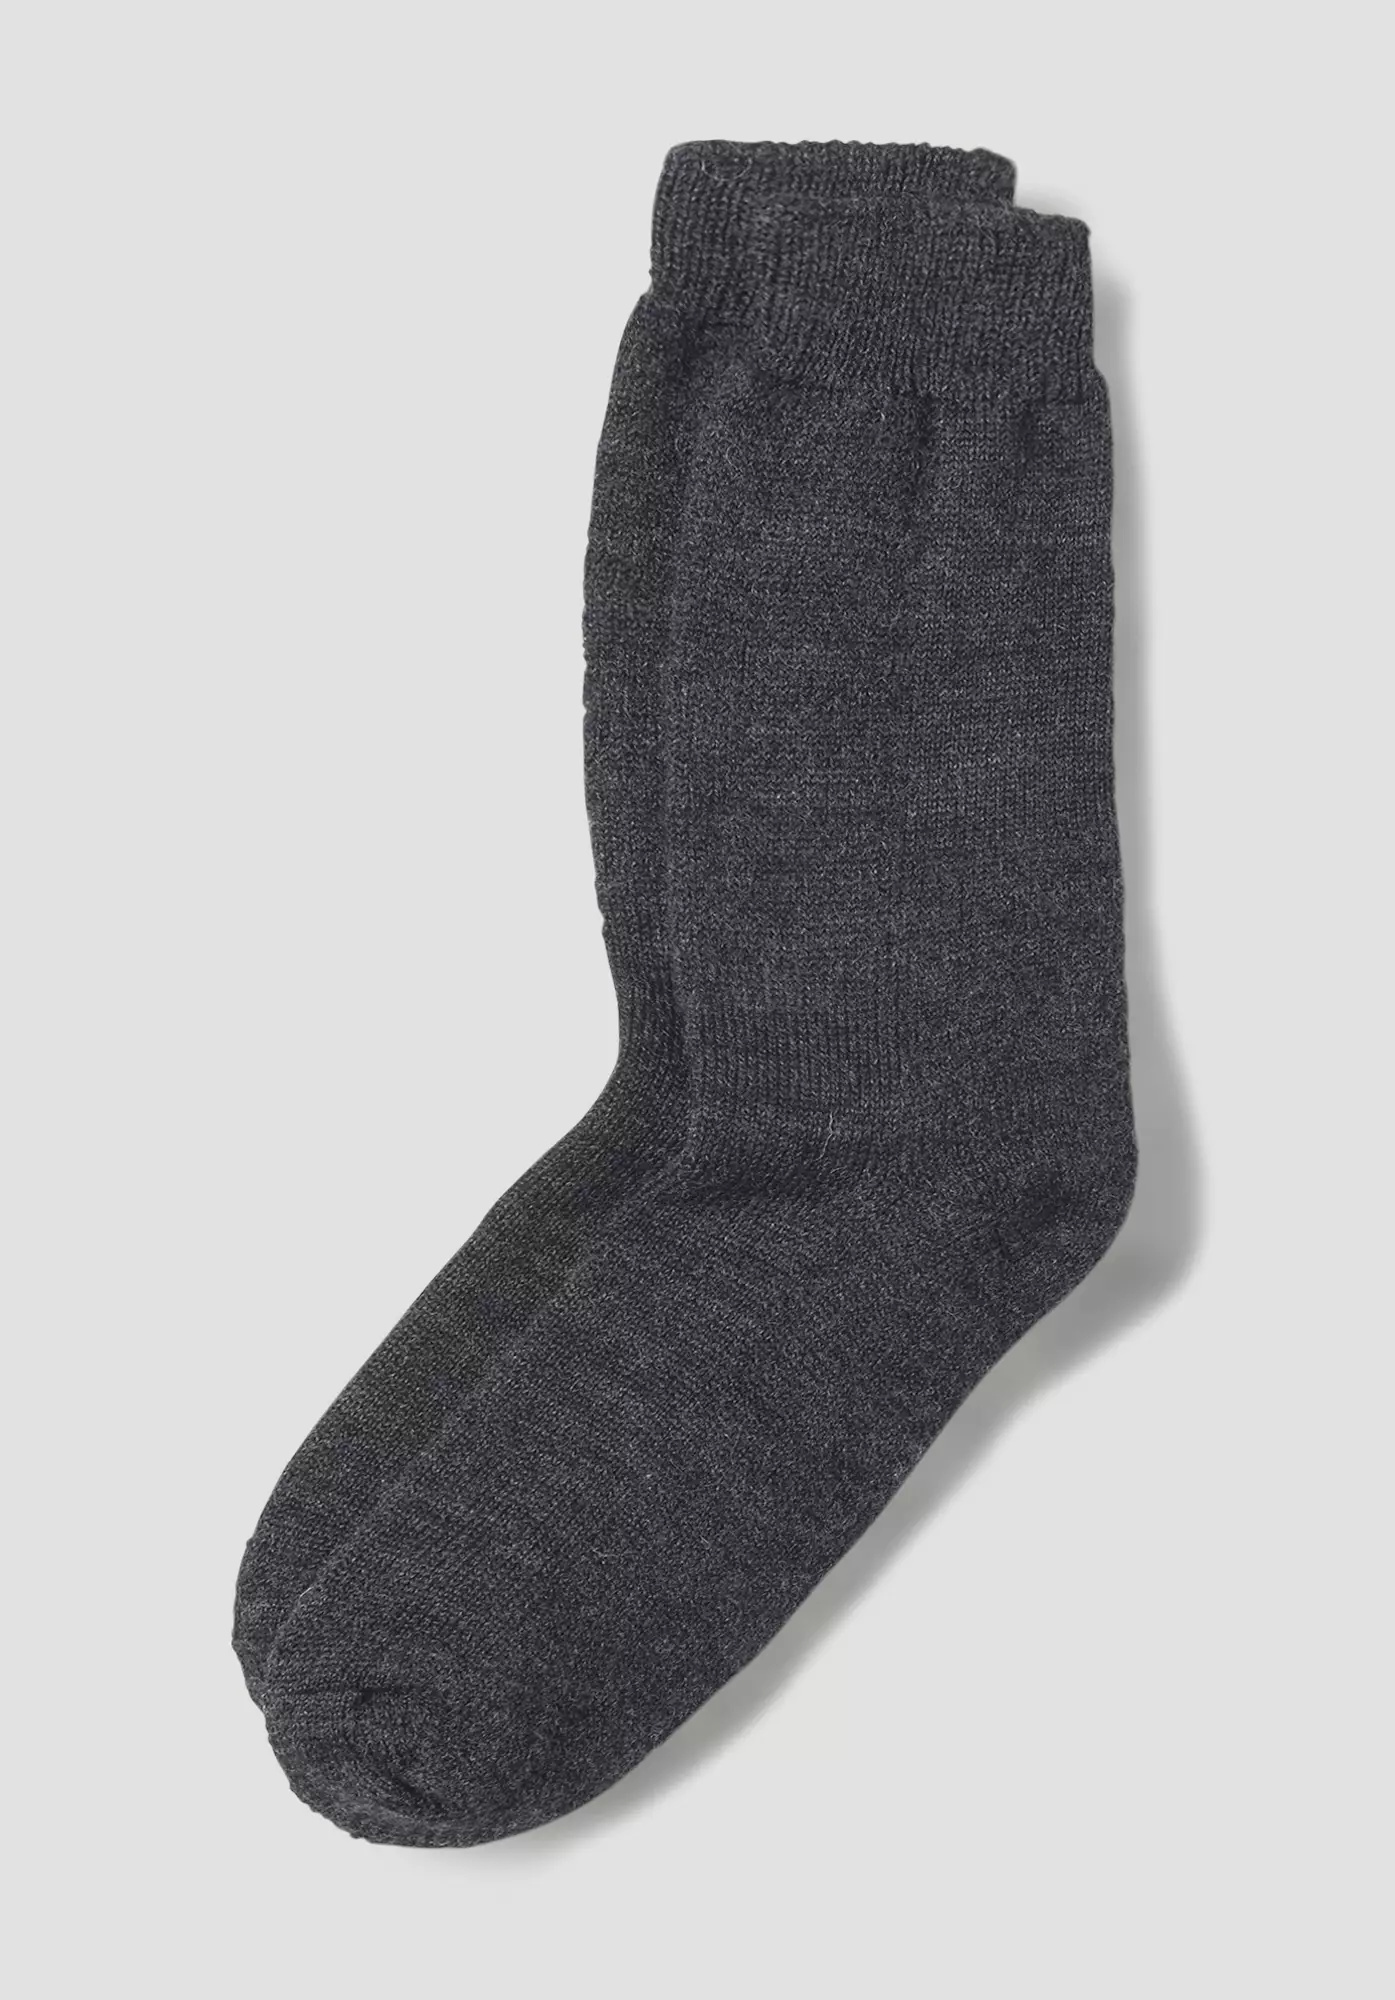 Hiking socks made from pure organic merino wool - 0